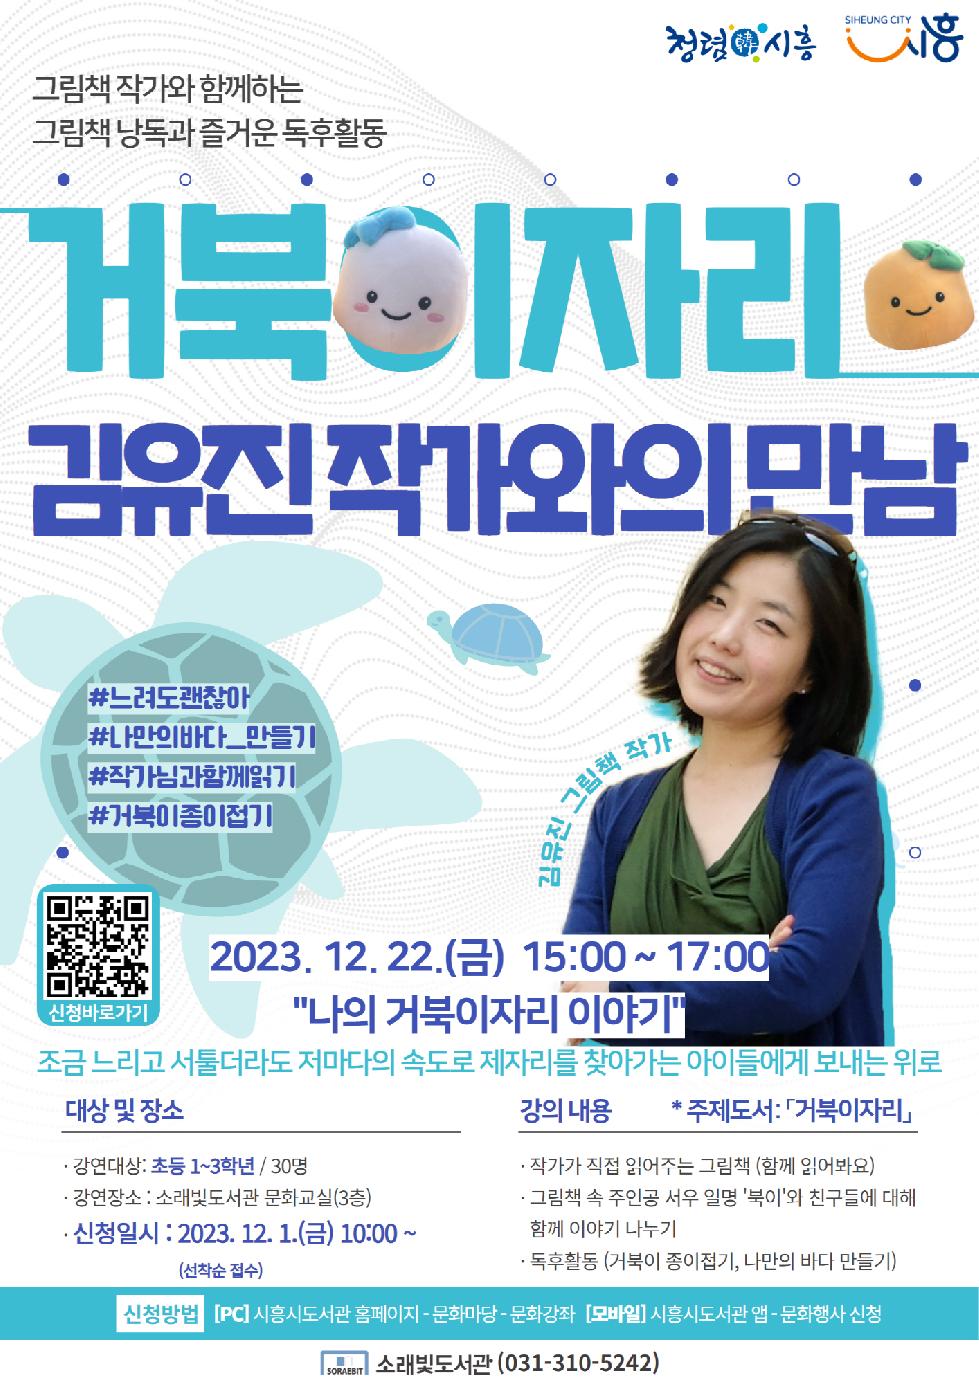 시흥시소래빛도서관 3인 3색 작가와의 만남 개최